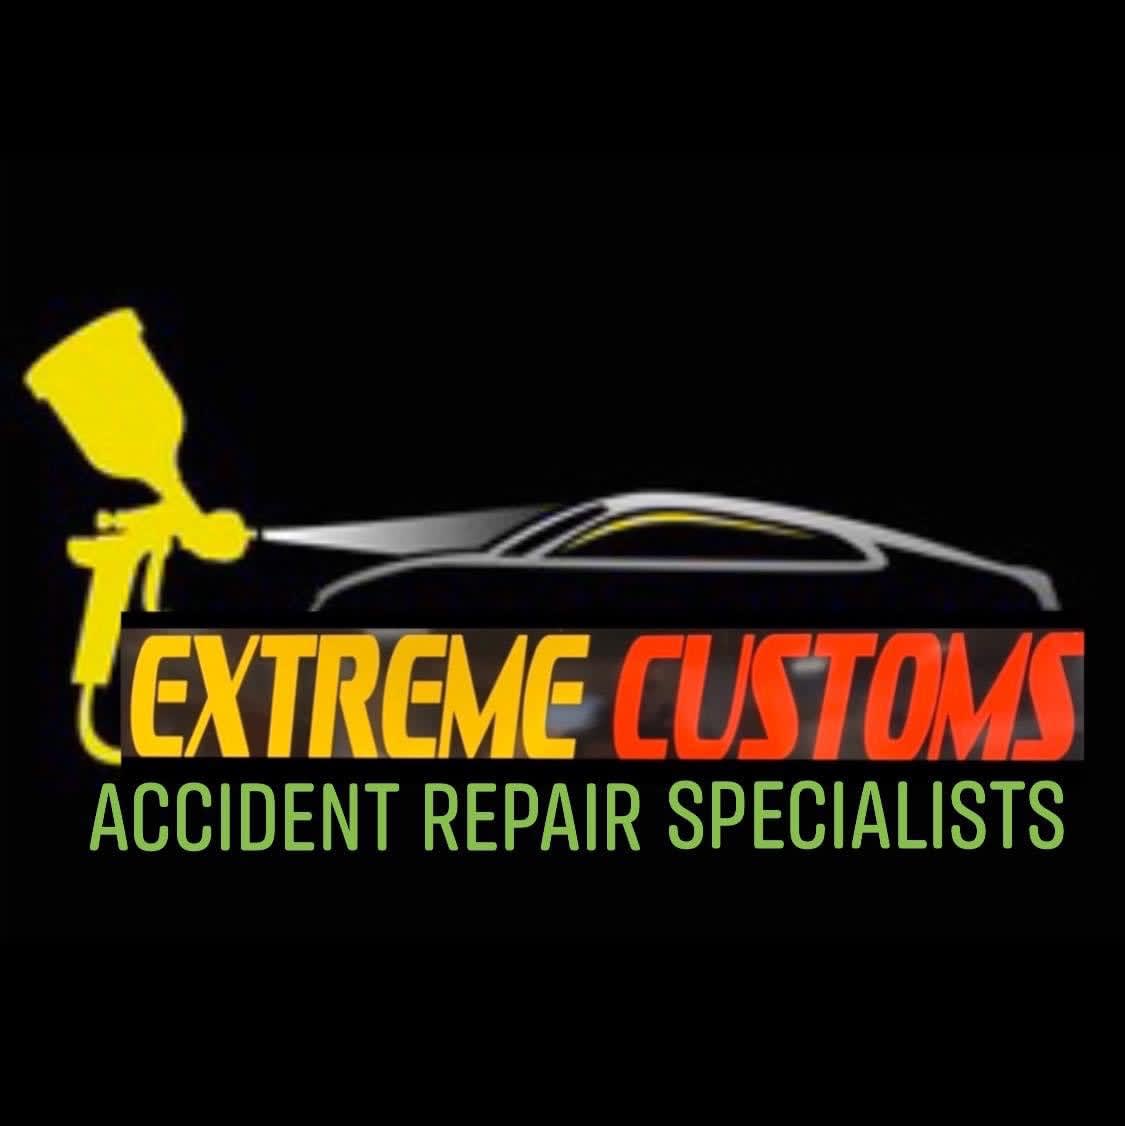 Extreme customs accident repair specialist